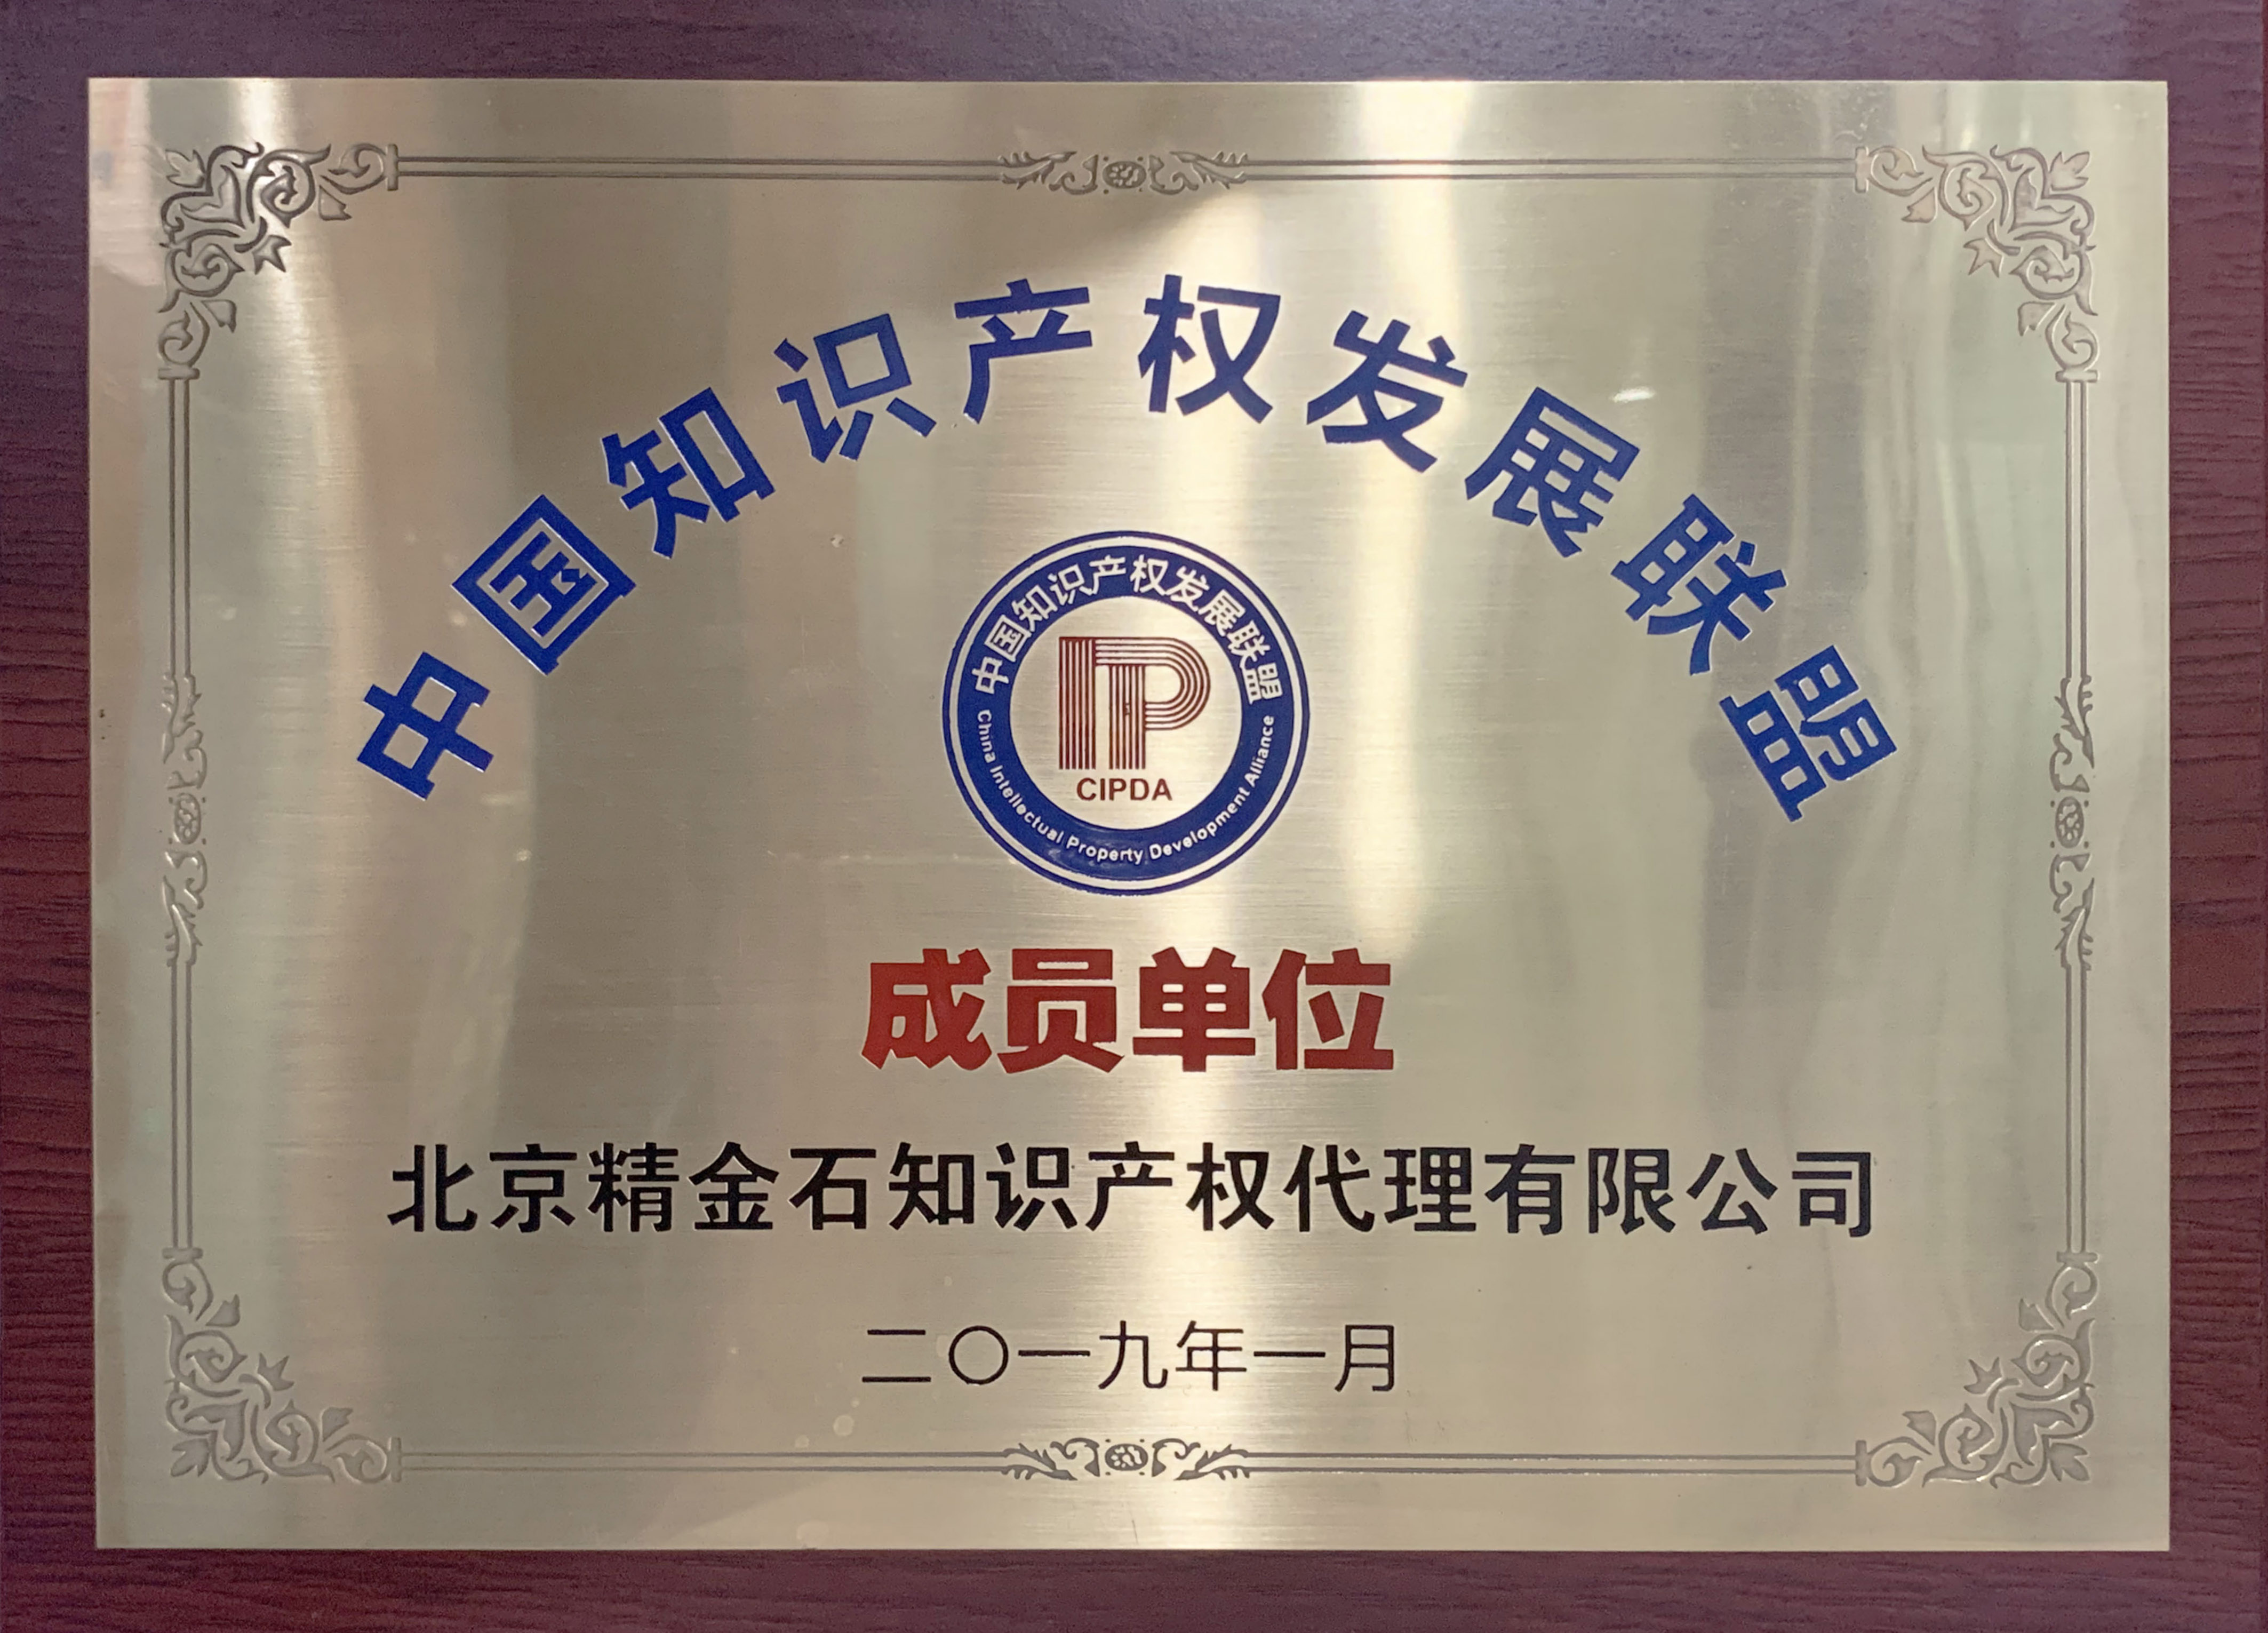 中国知识产权发展联盟成员单位